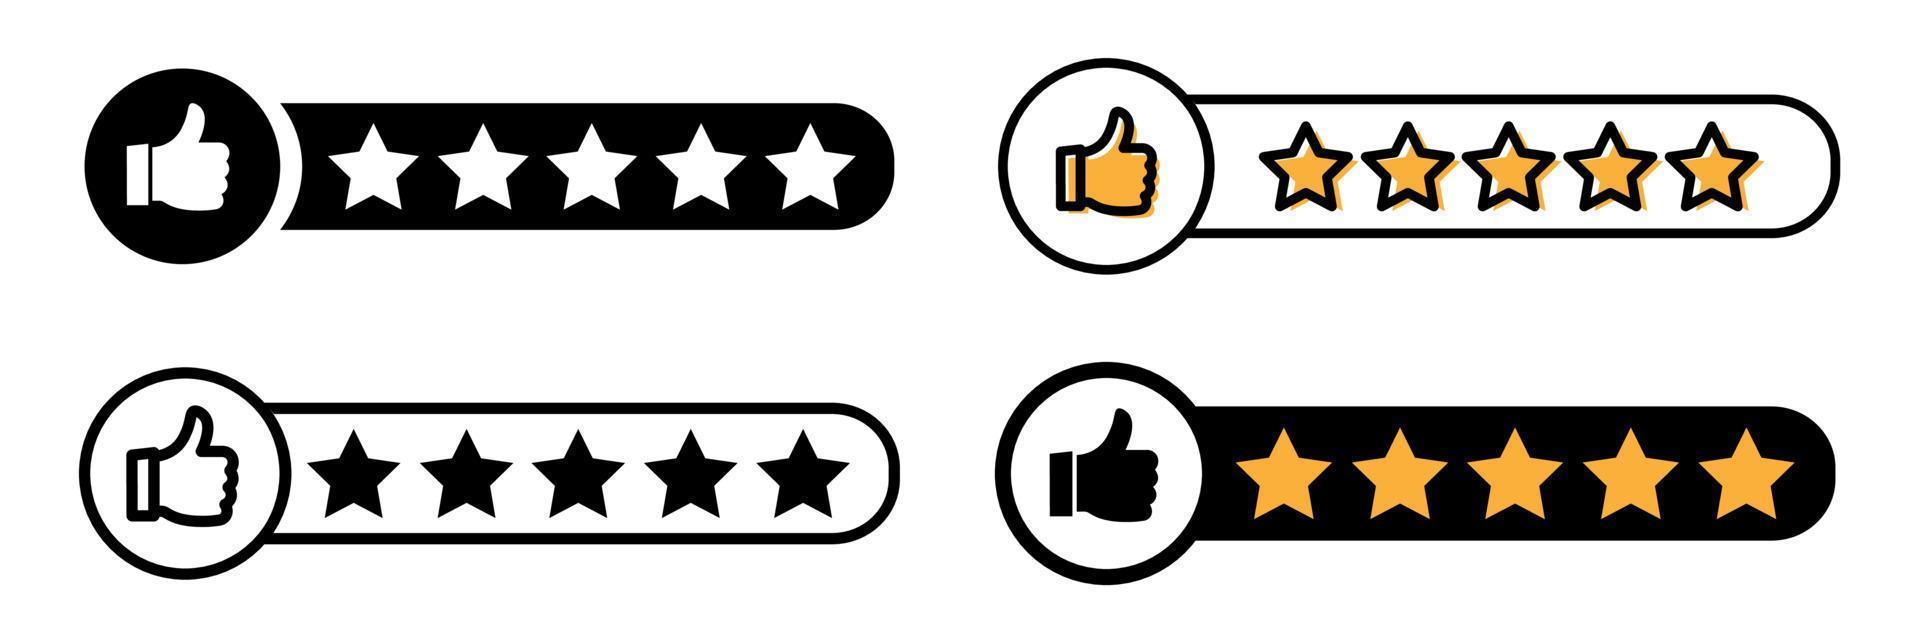 reputazione 5 pollici su stella icona. cliente revisione icona, qualità valutazione, feedback. isolato vettore illustrazione.